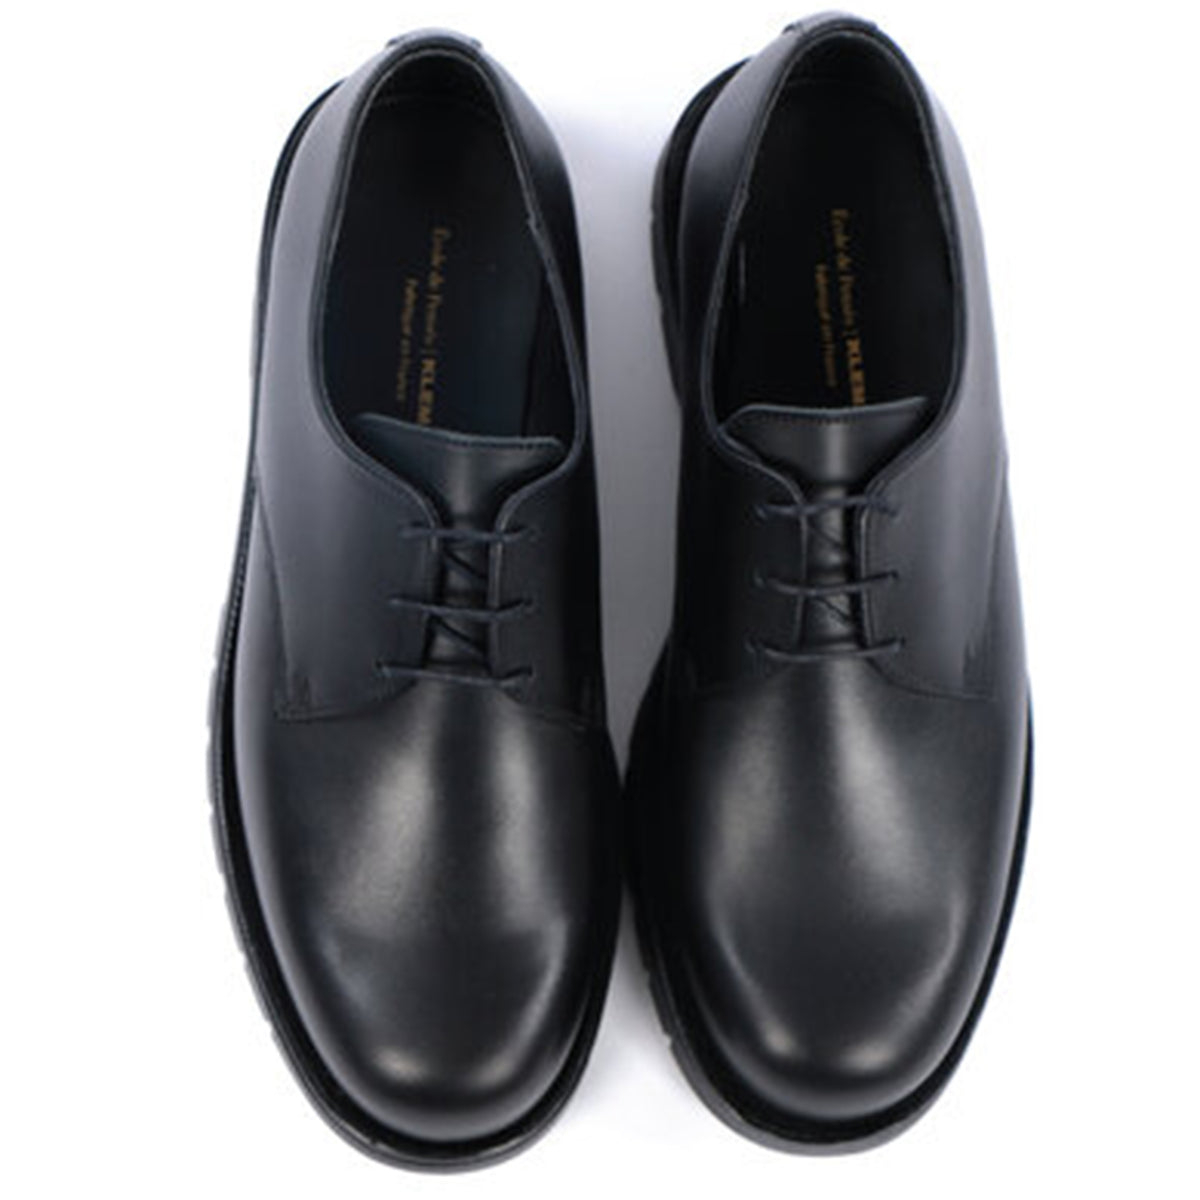 Kleman x Ecole de Pensée Dormance Derby Shoe Collaboration Footwear Black Top View